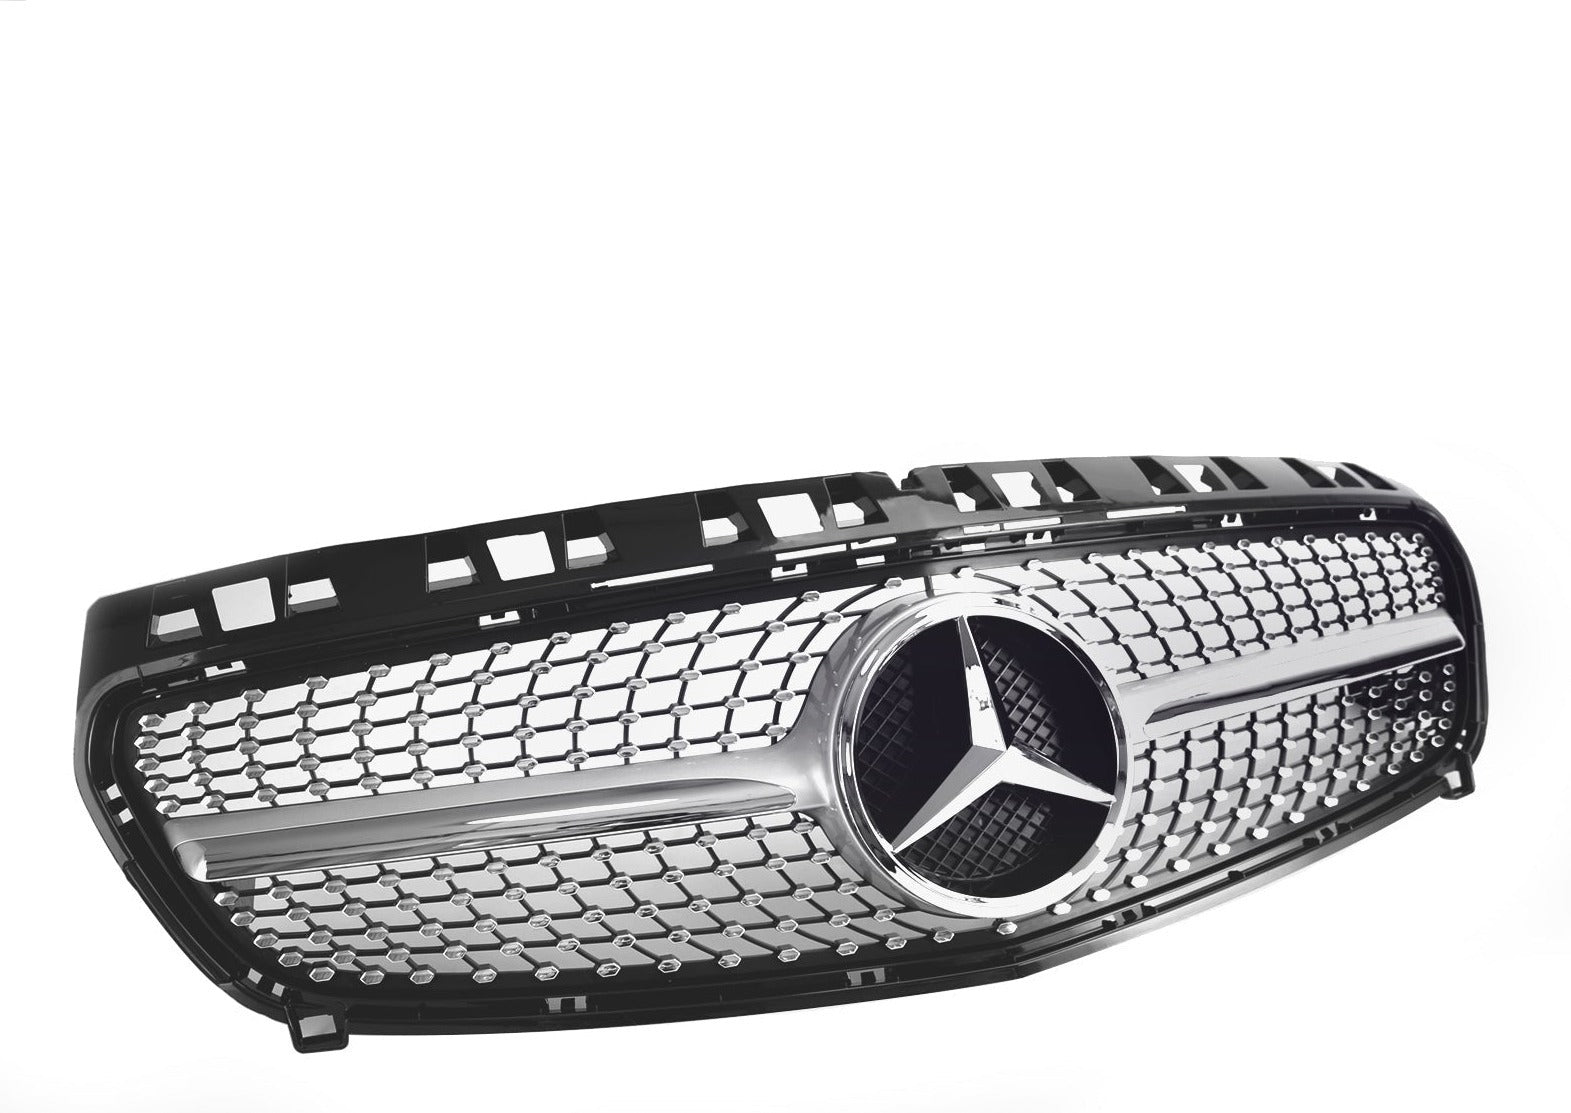 Grille de pare-chocs avant noire brillante pour Mercedes Benz Classe A W176 2013-2015